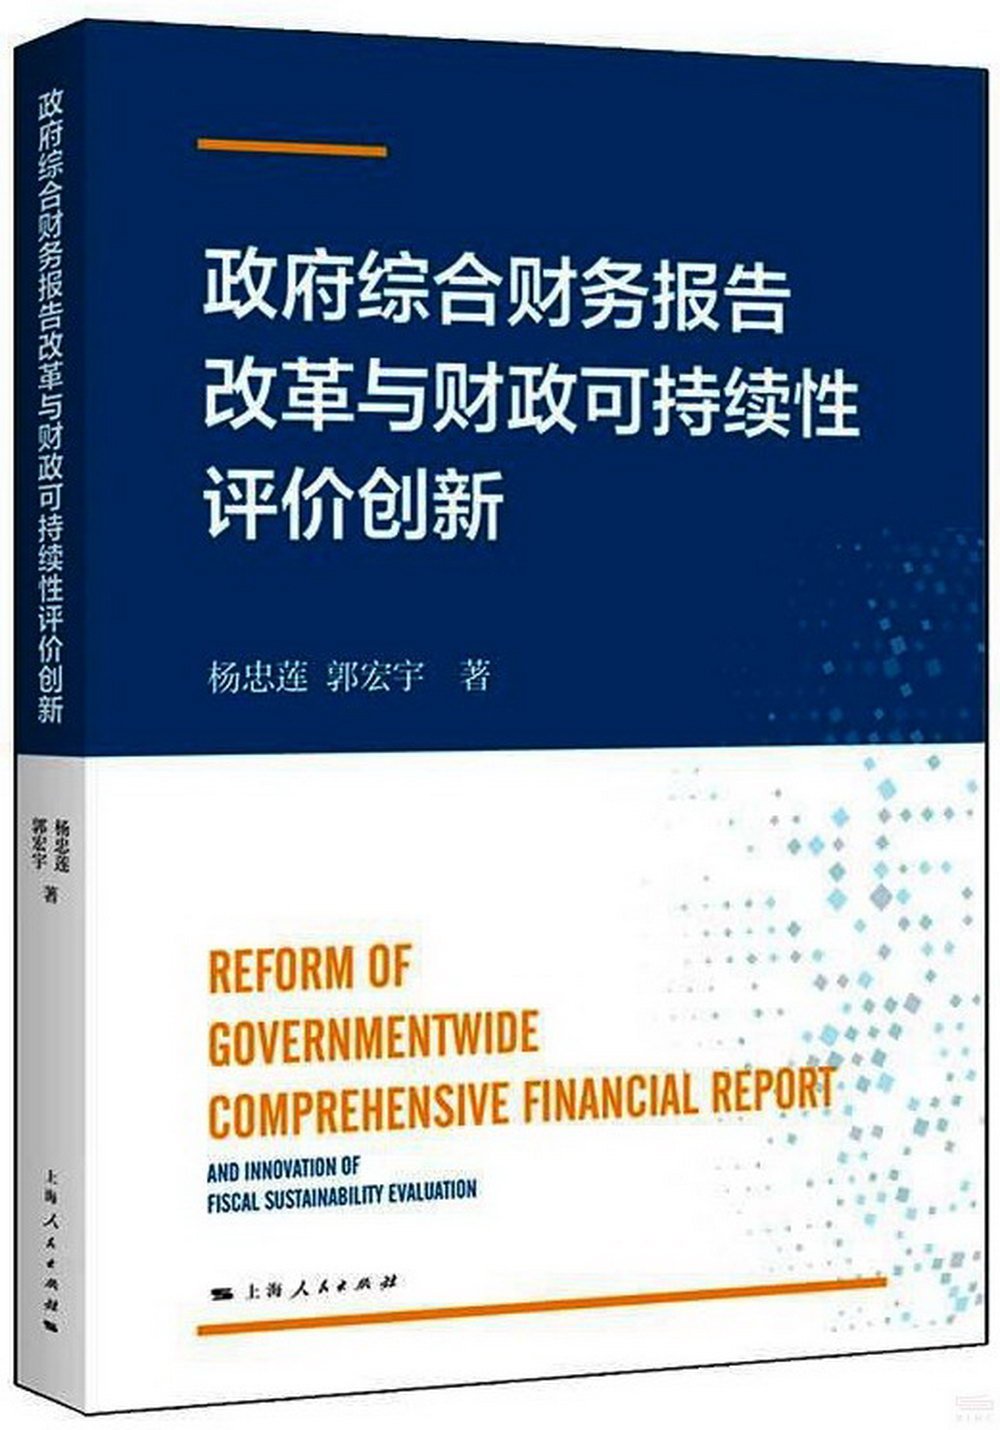 政府綜合財務報告改革與財政可持續性評價創新